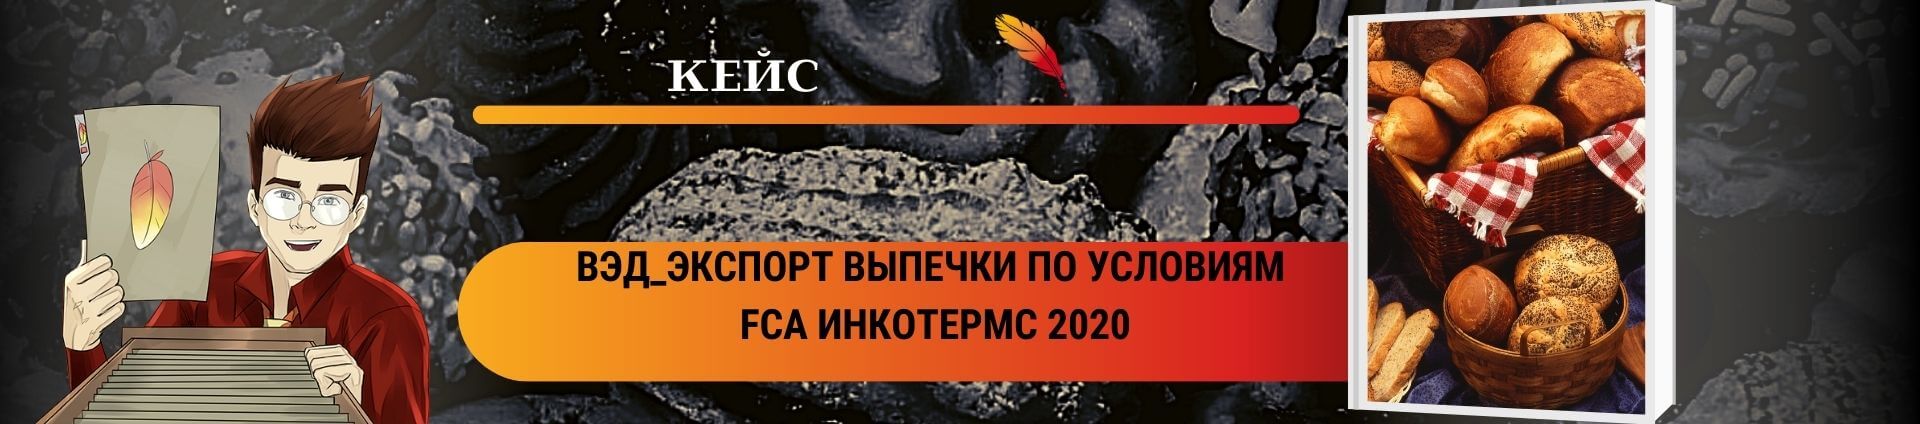 ВЭД_Экспорт выпечки по условиям FCA Инкотермс 2020